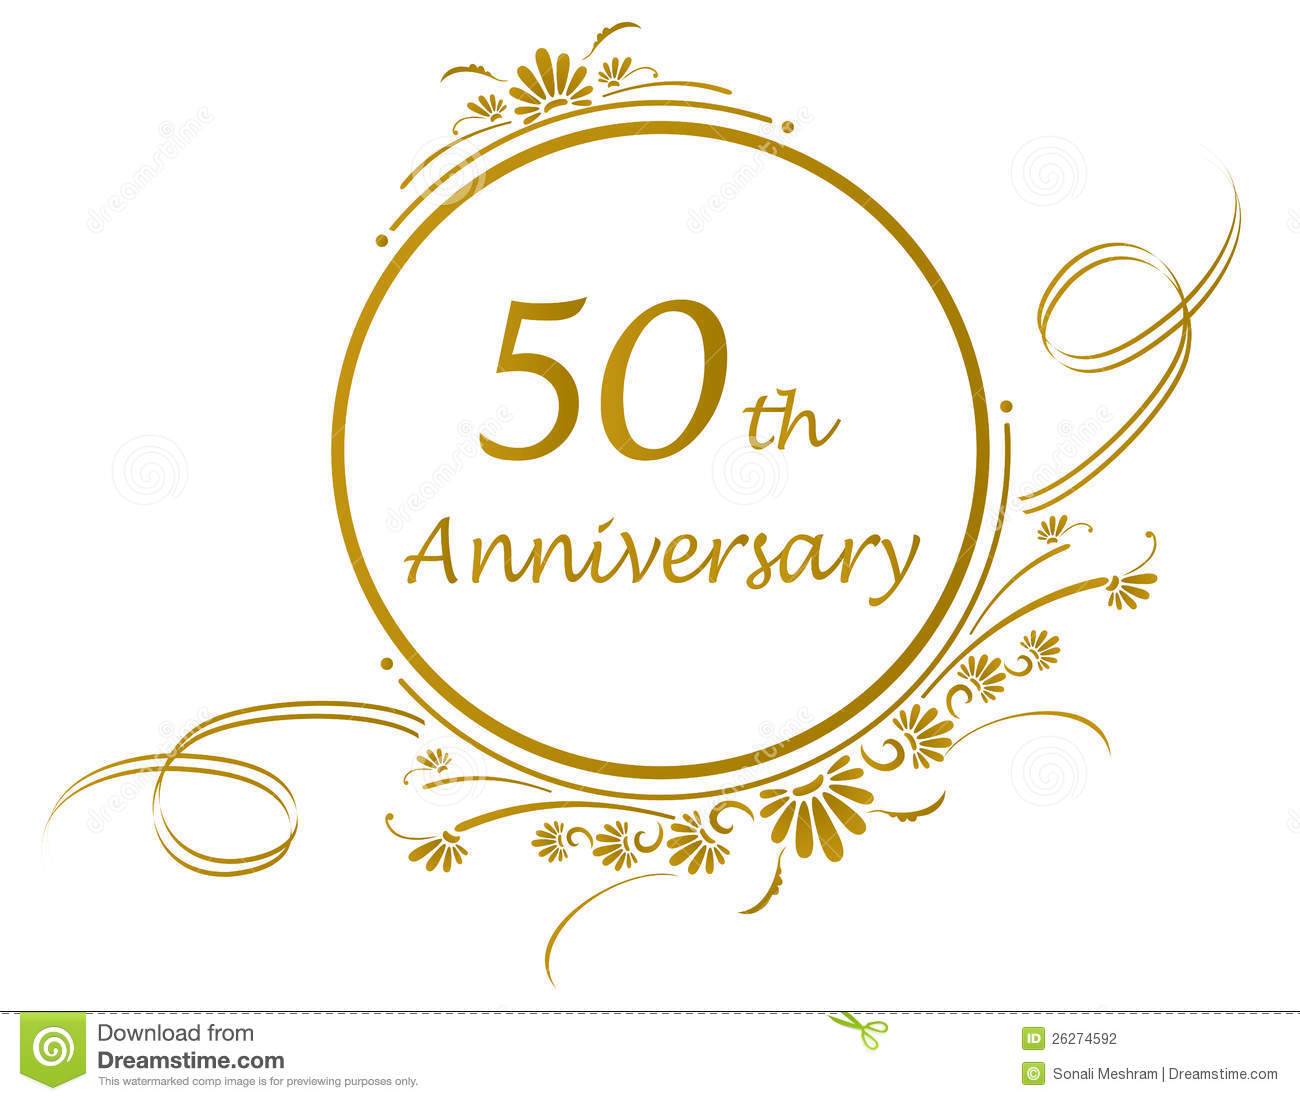 Anniversary 50 year